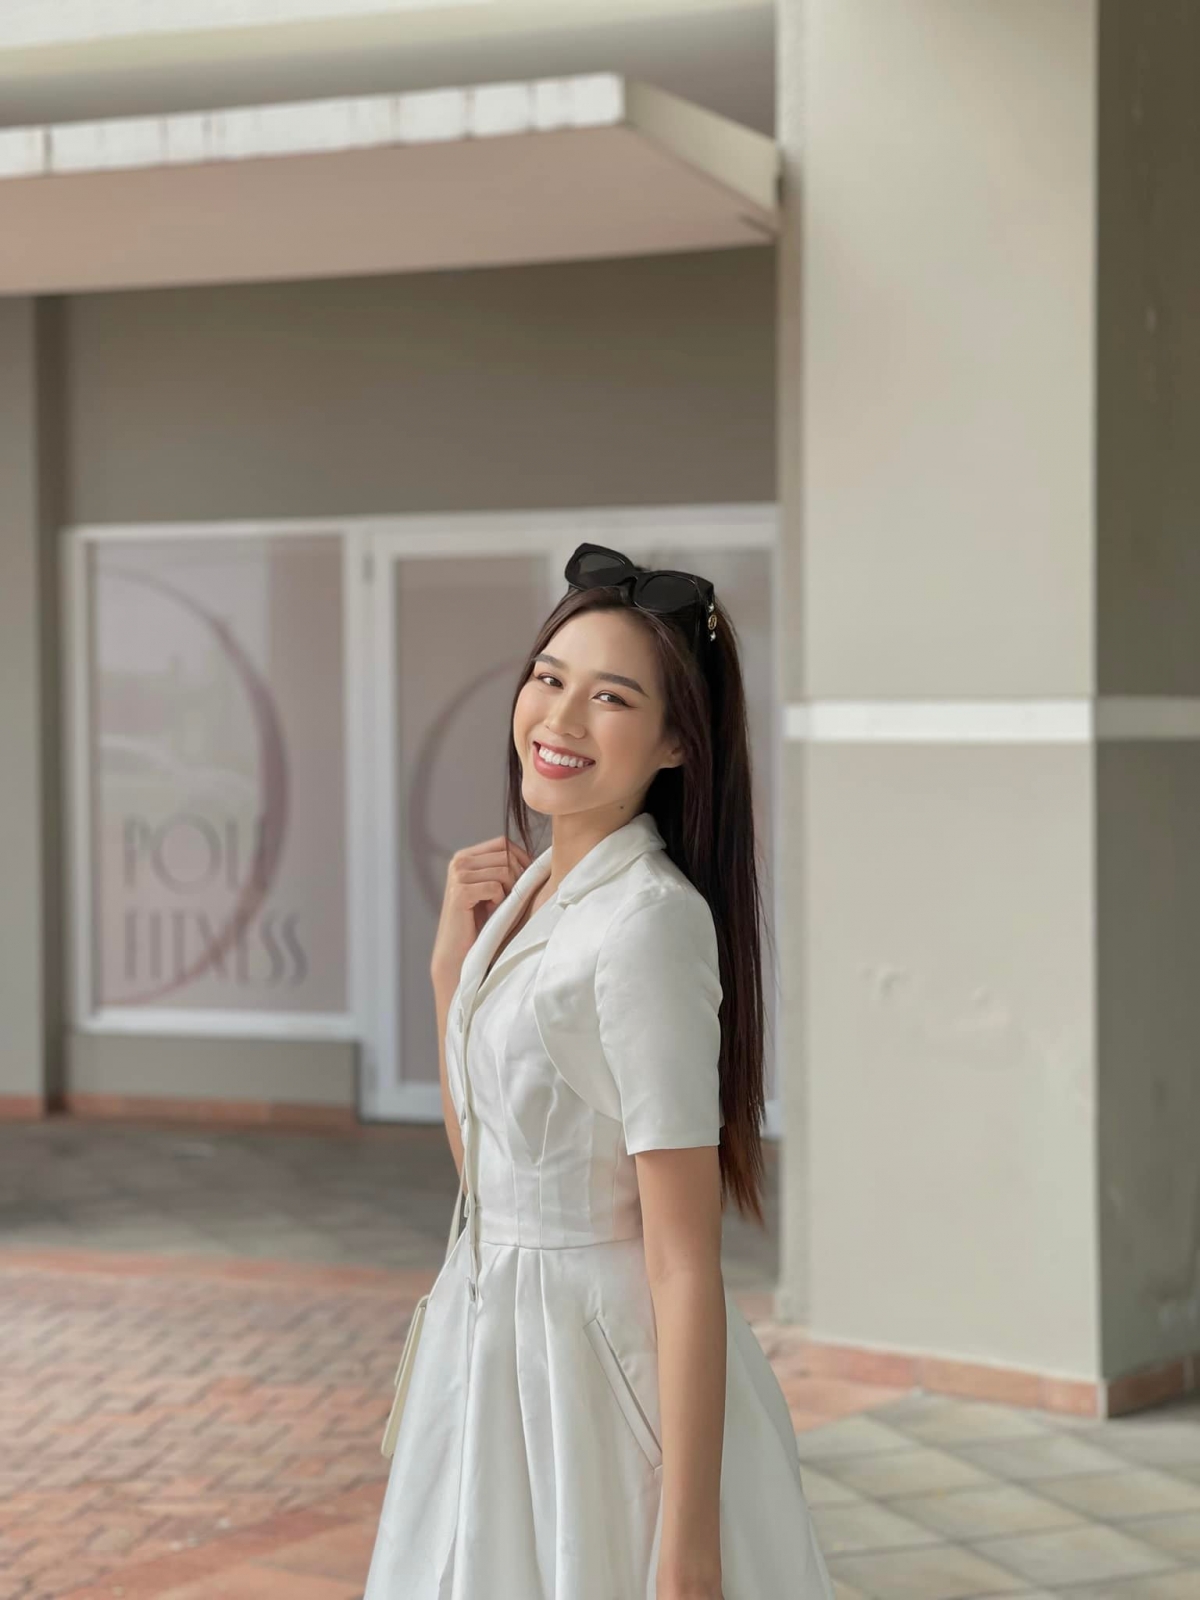 Hoa hậu Đỗ Thị Hà hóa nàng thơ yêu kiều với sắc trắng tinh khôi trước khi về nước - Ảnh 4.